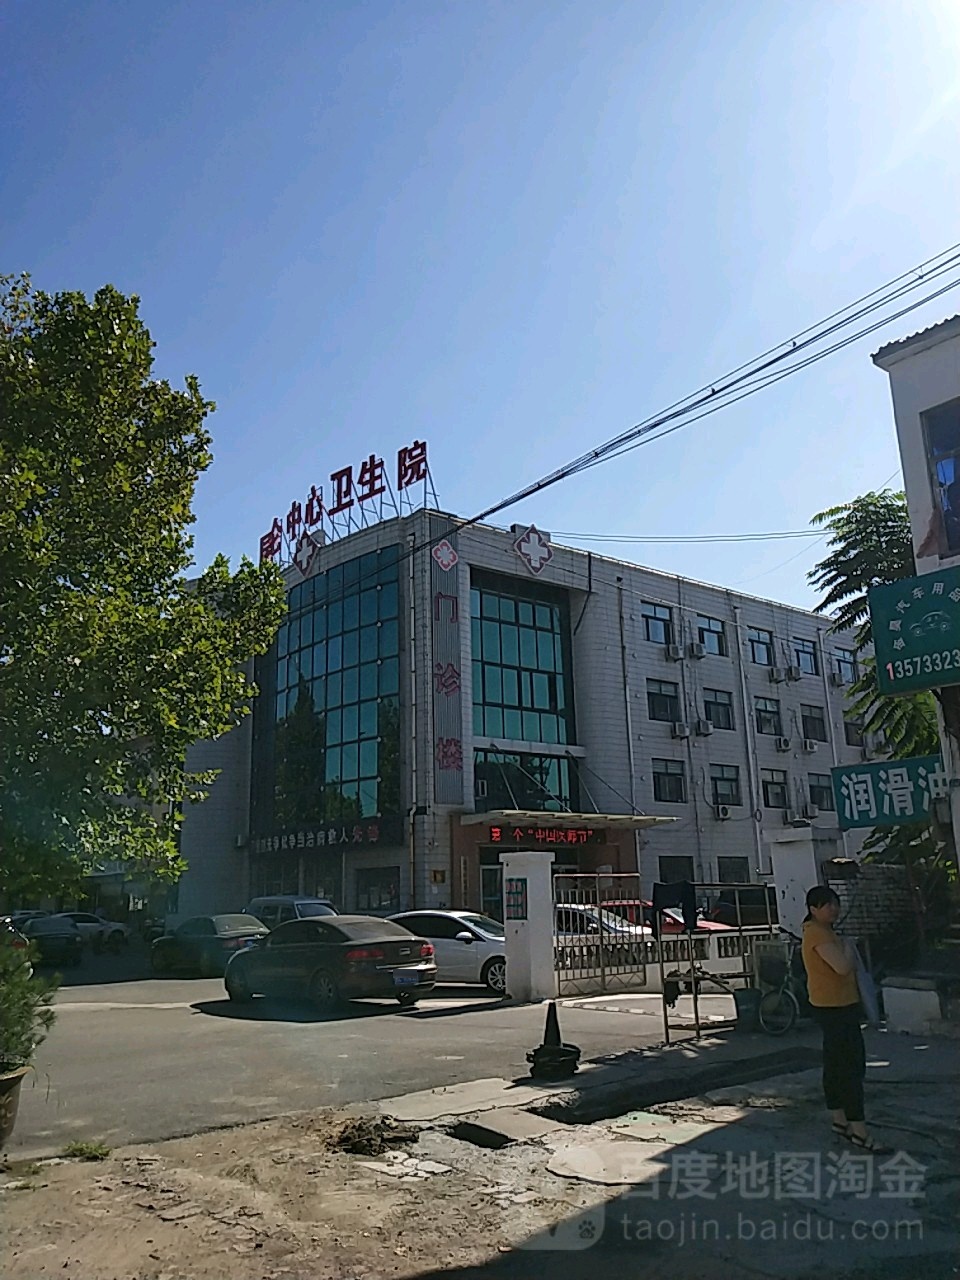 淄博市淄川区S232昆仑宾馆昆仑中心医院西南西南侧约110米